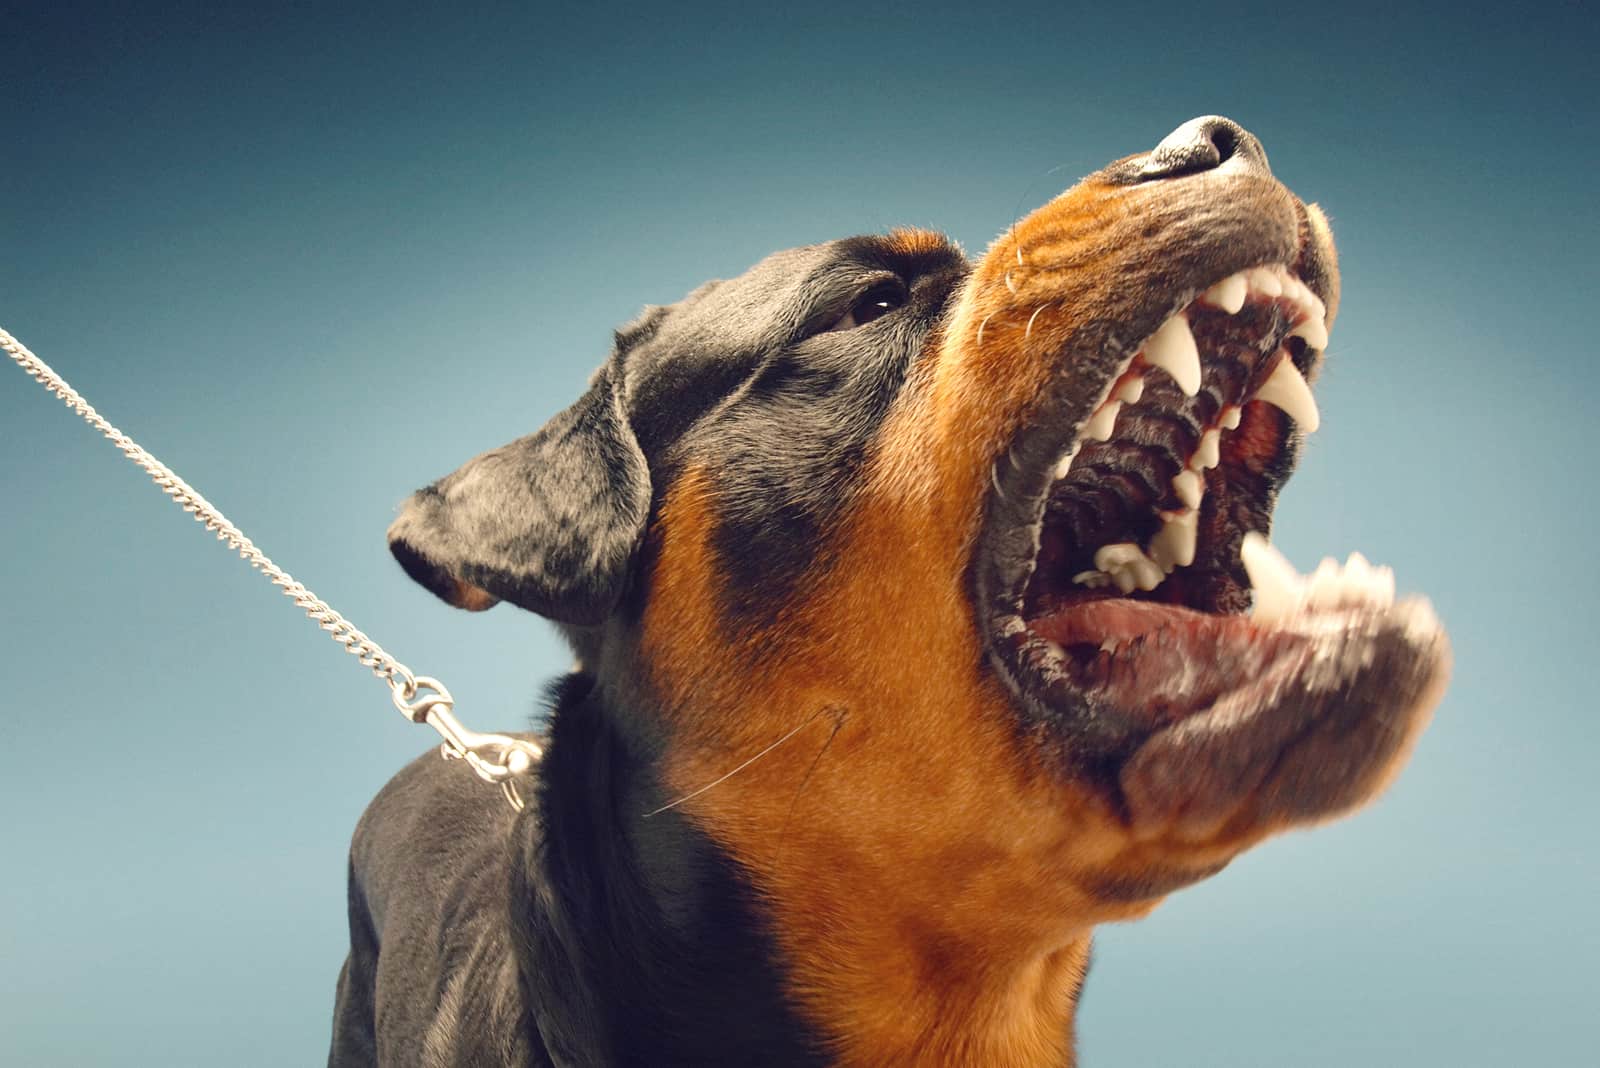 an aggressive Rottweiler dog barks